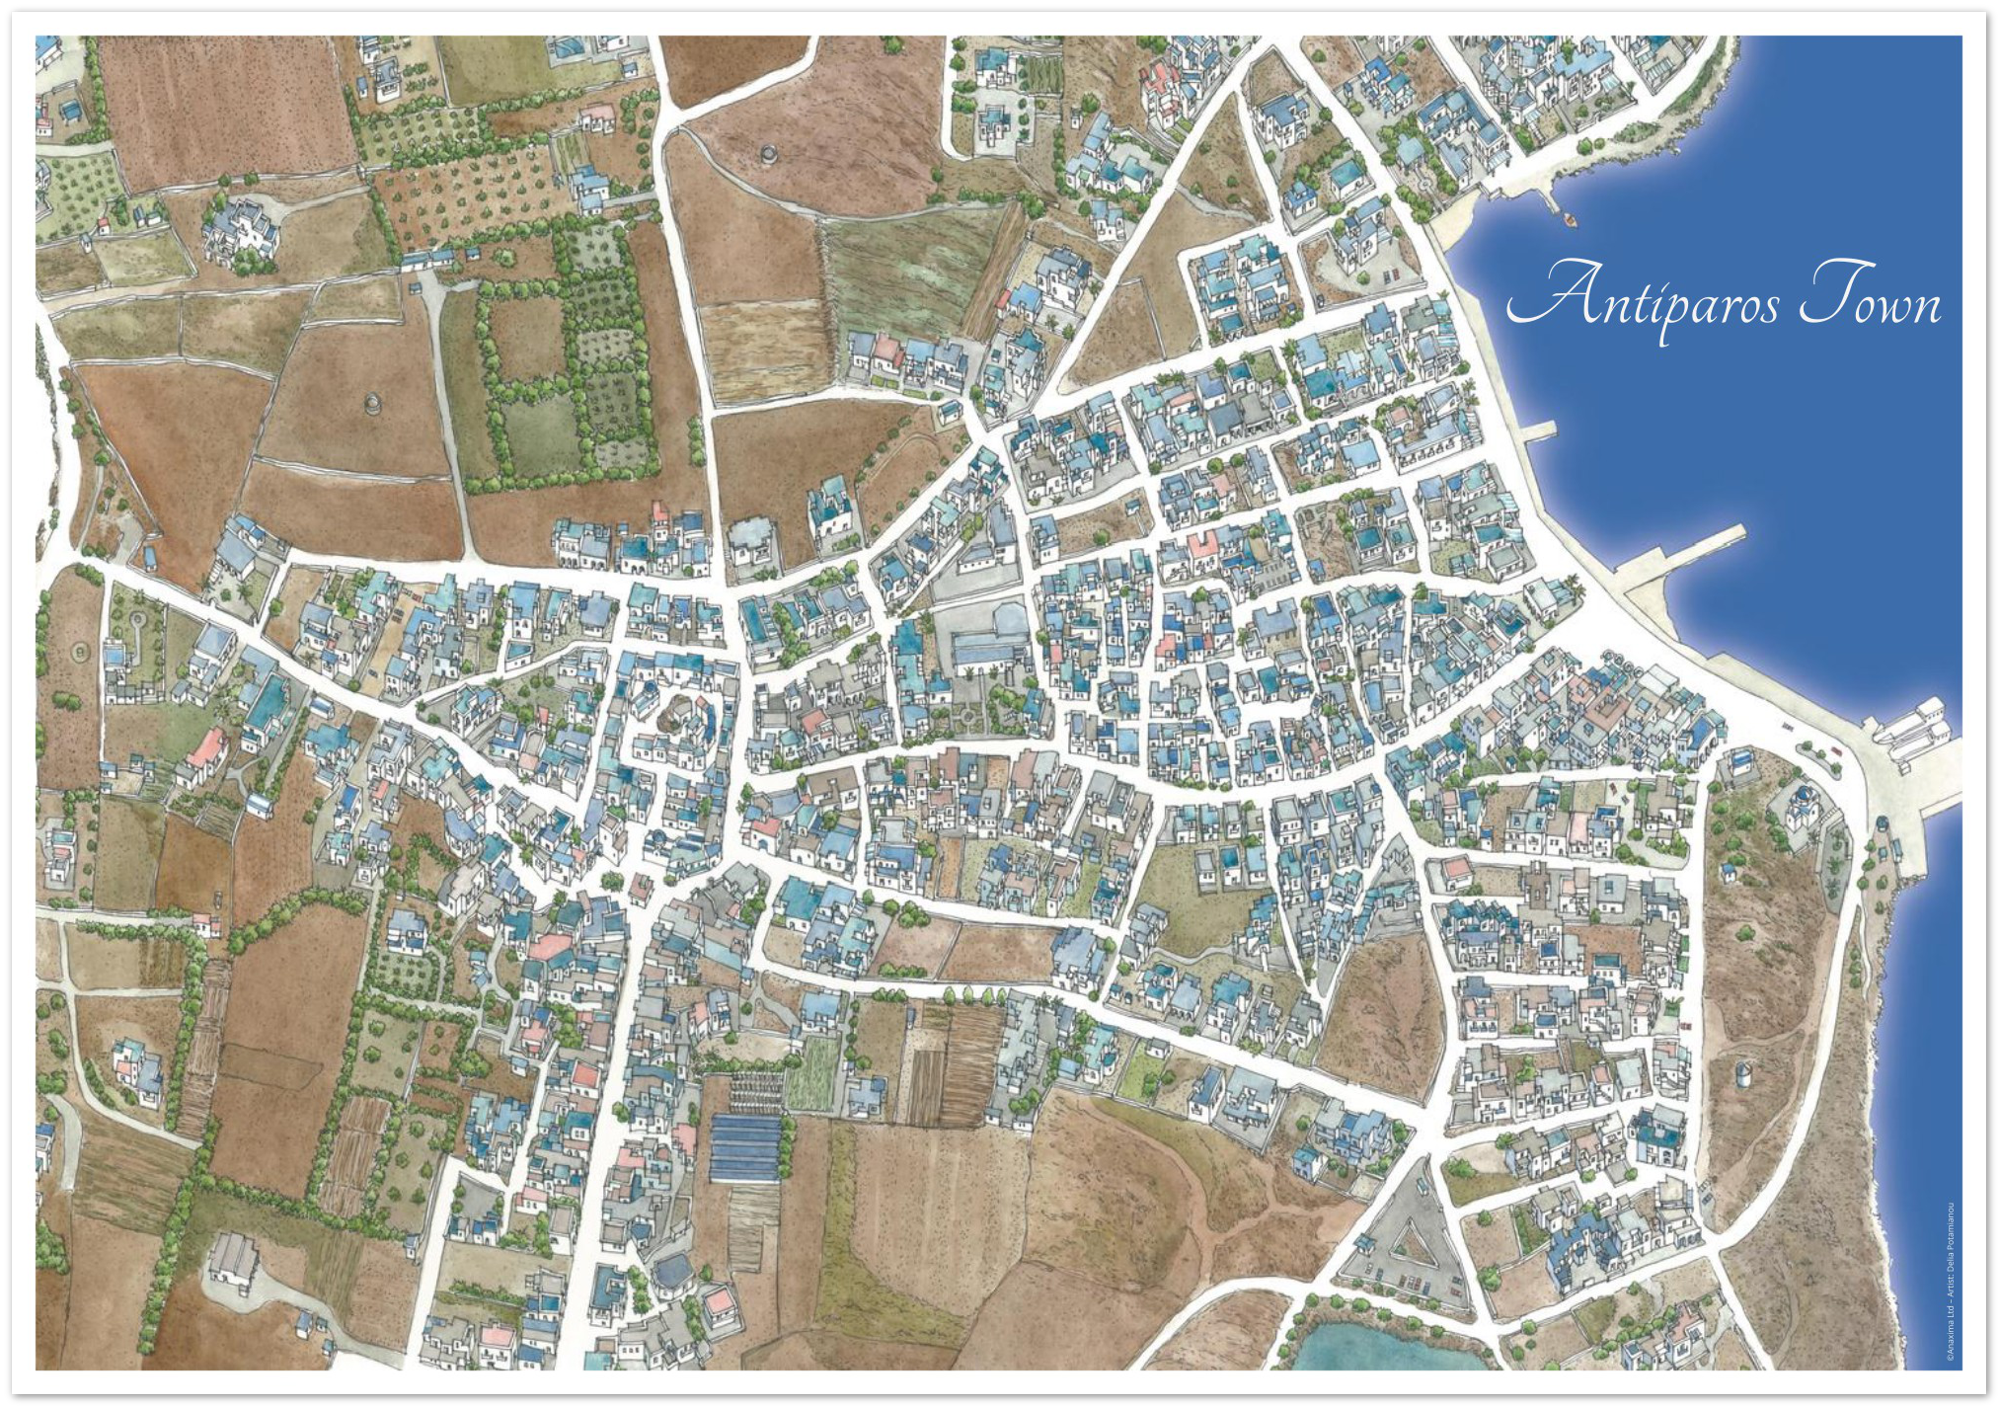 Antiparos Town, Greece – Color - Premium Semi-Glossy Paper Poster